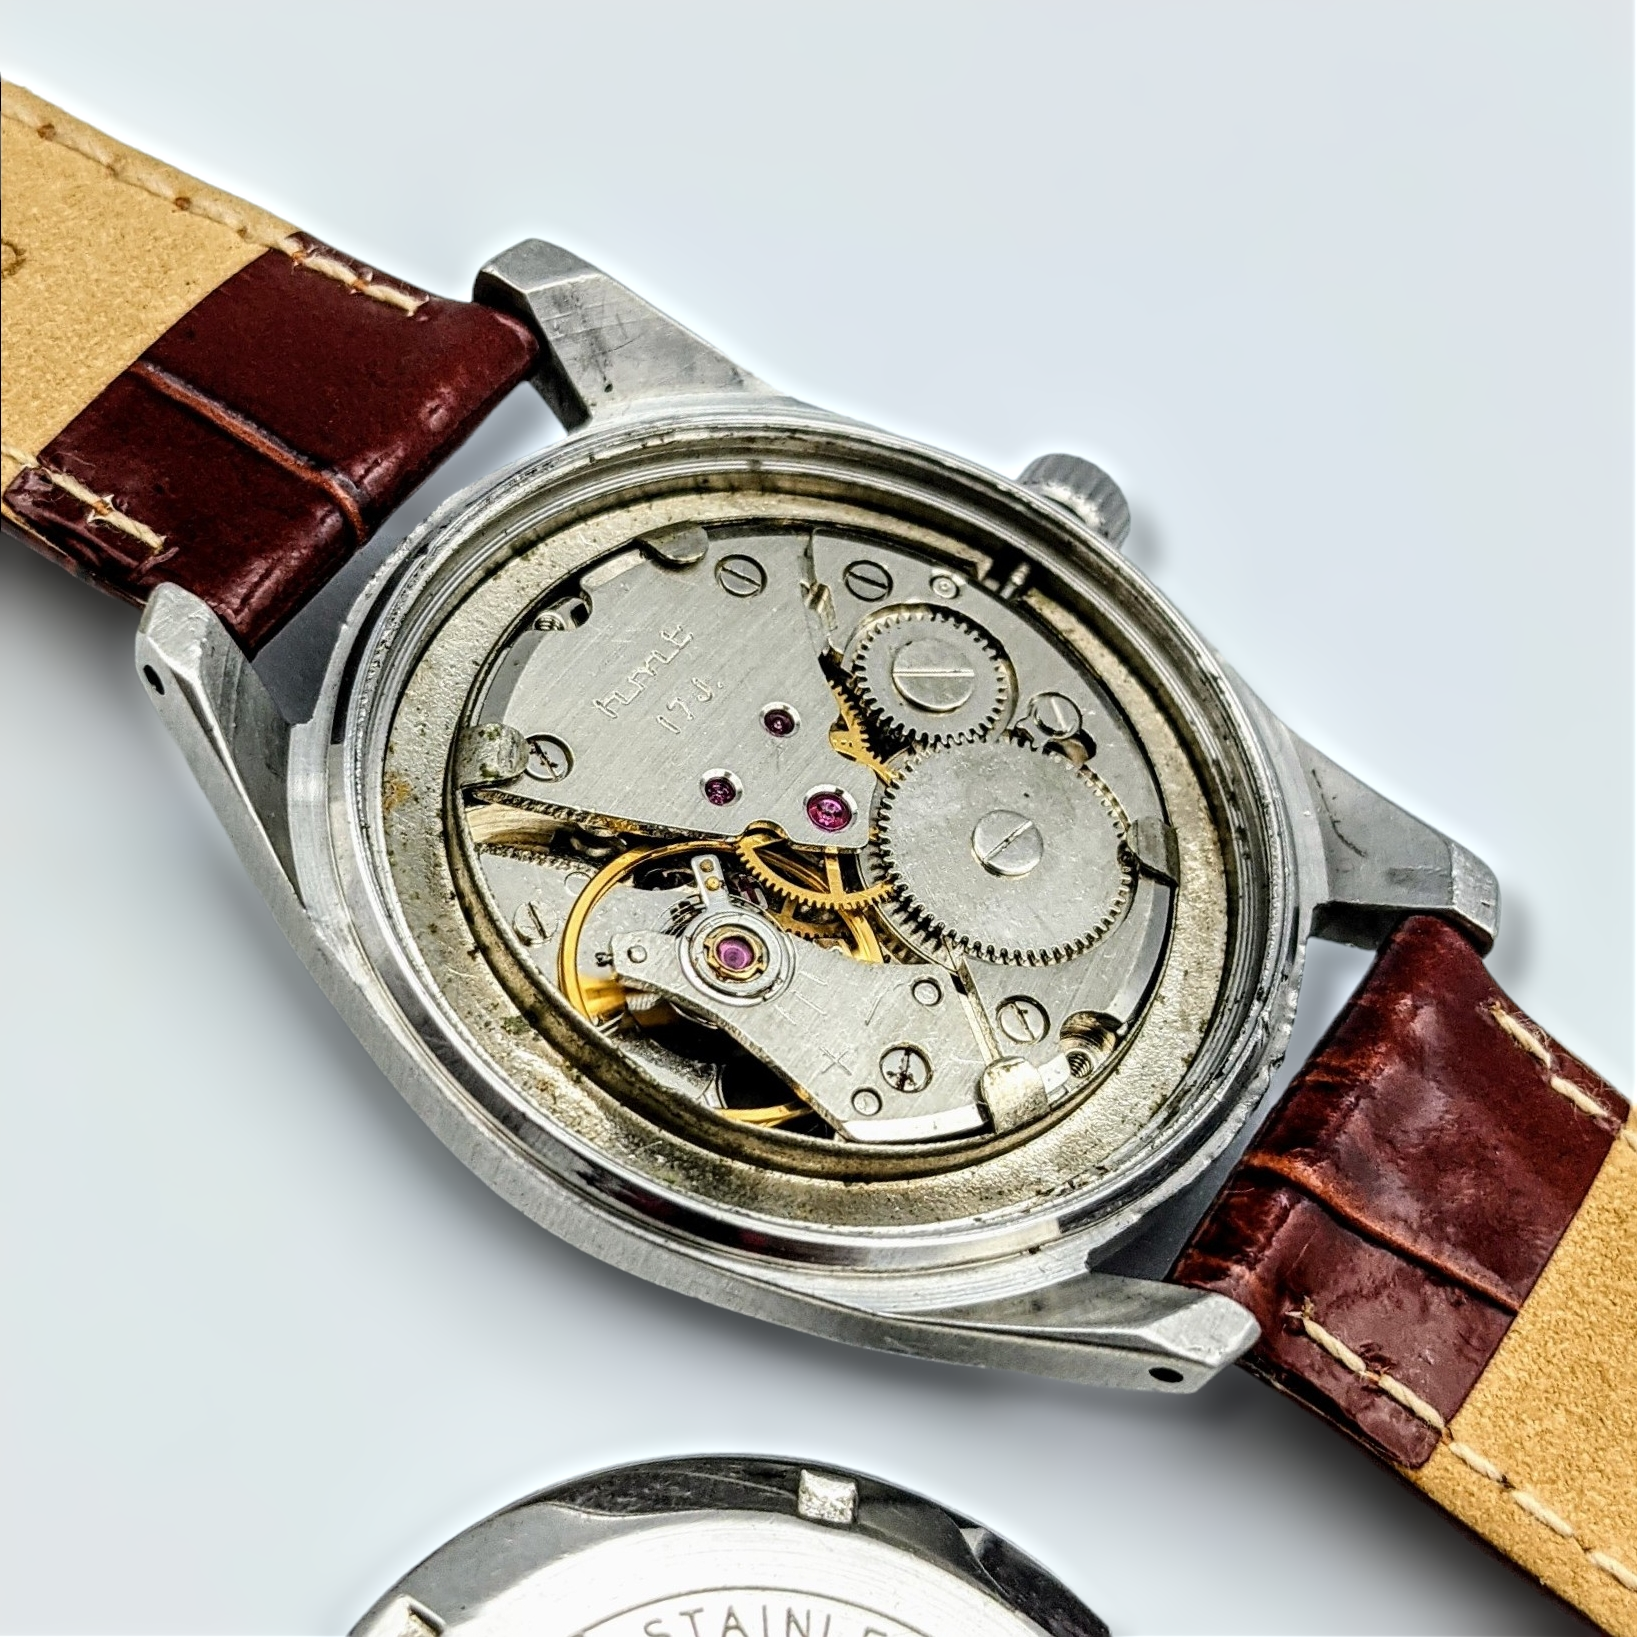 Janata Watch Roman & Arabic Numerals 17 Jewels Cal. 0231 Wristwatch